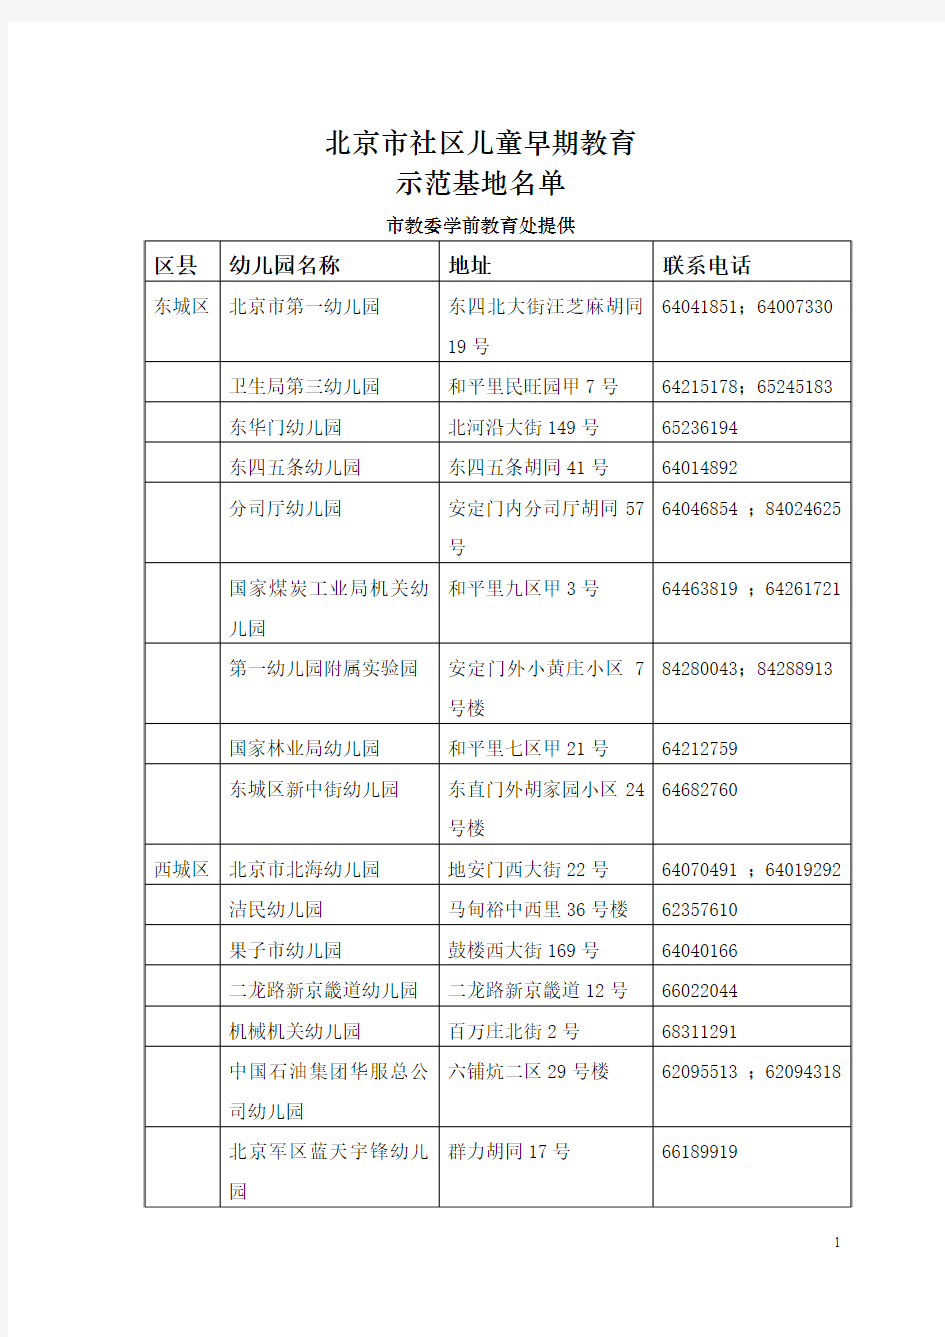 北京市社区儿童早期教育示范基地名单